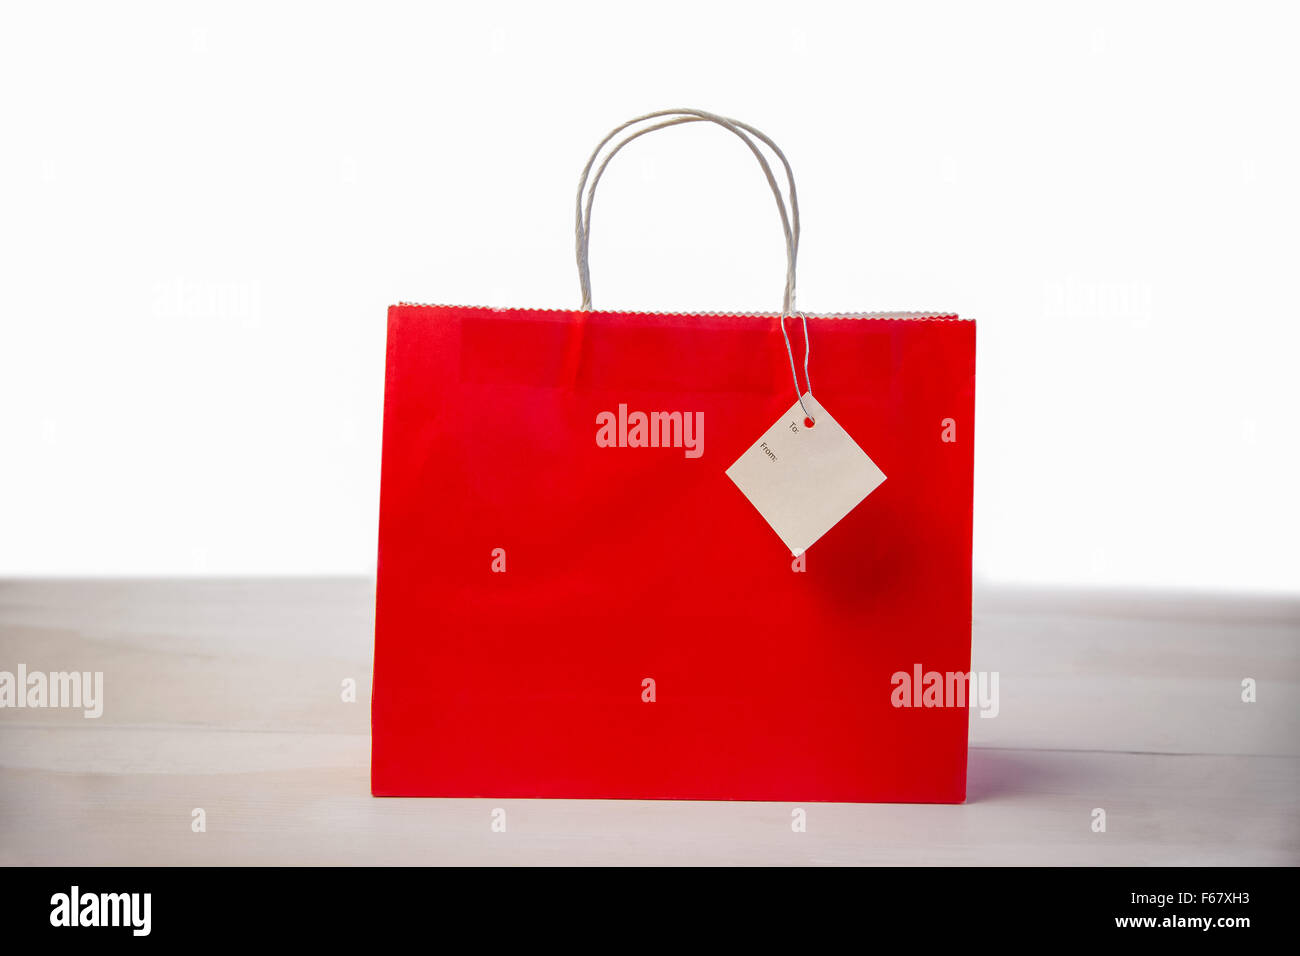 Sac cadeau shopping rouge avec tag Banque D'Images